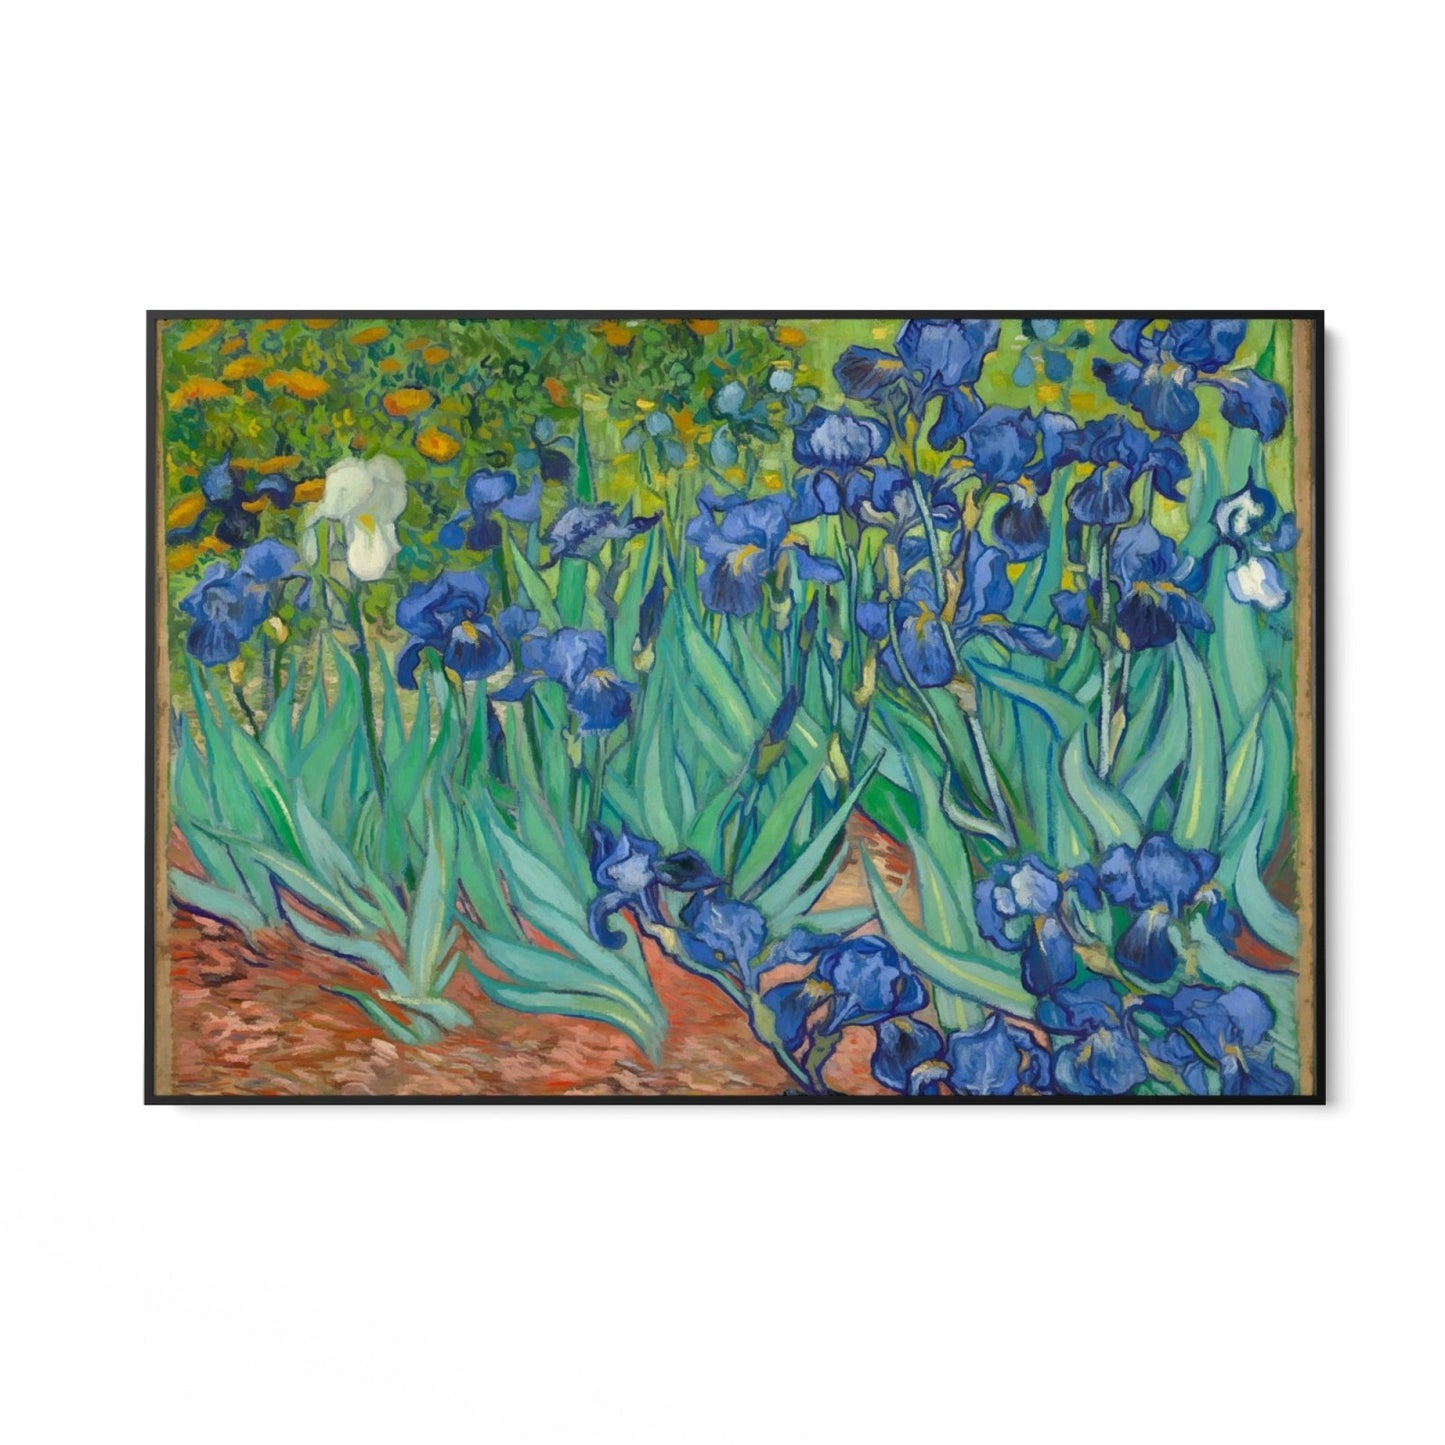 Irissen 1889, Vincent van Gogh